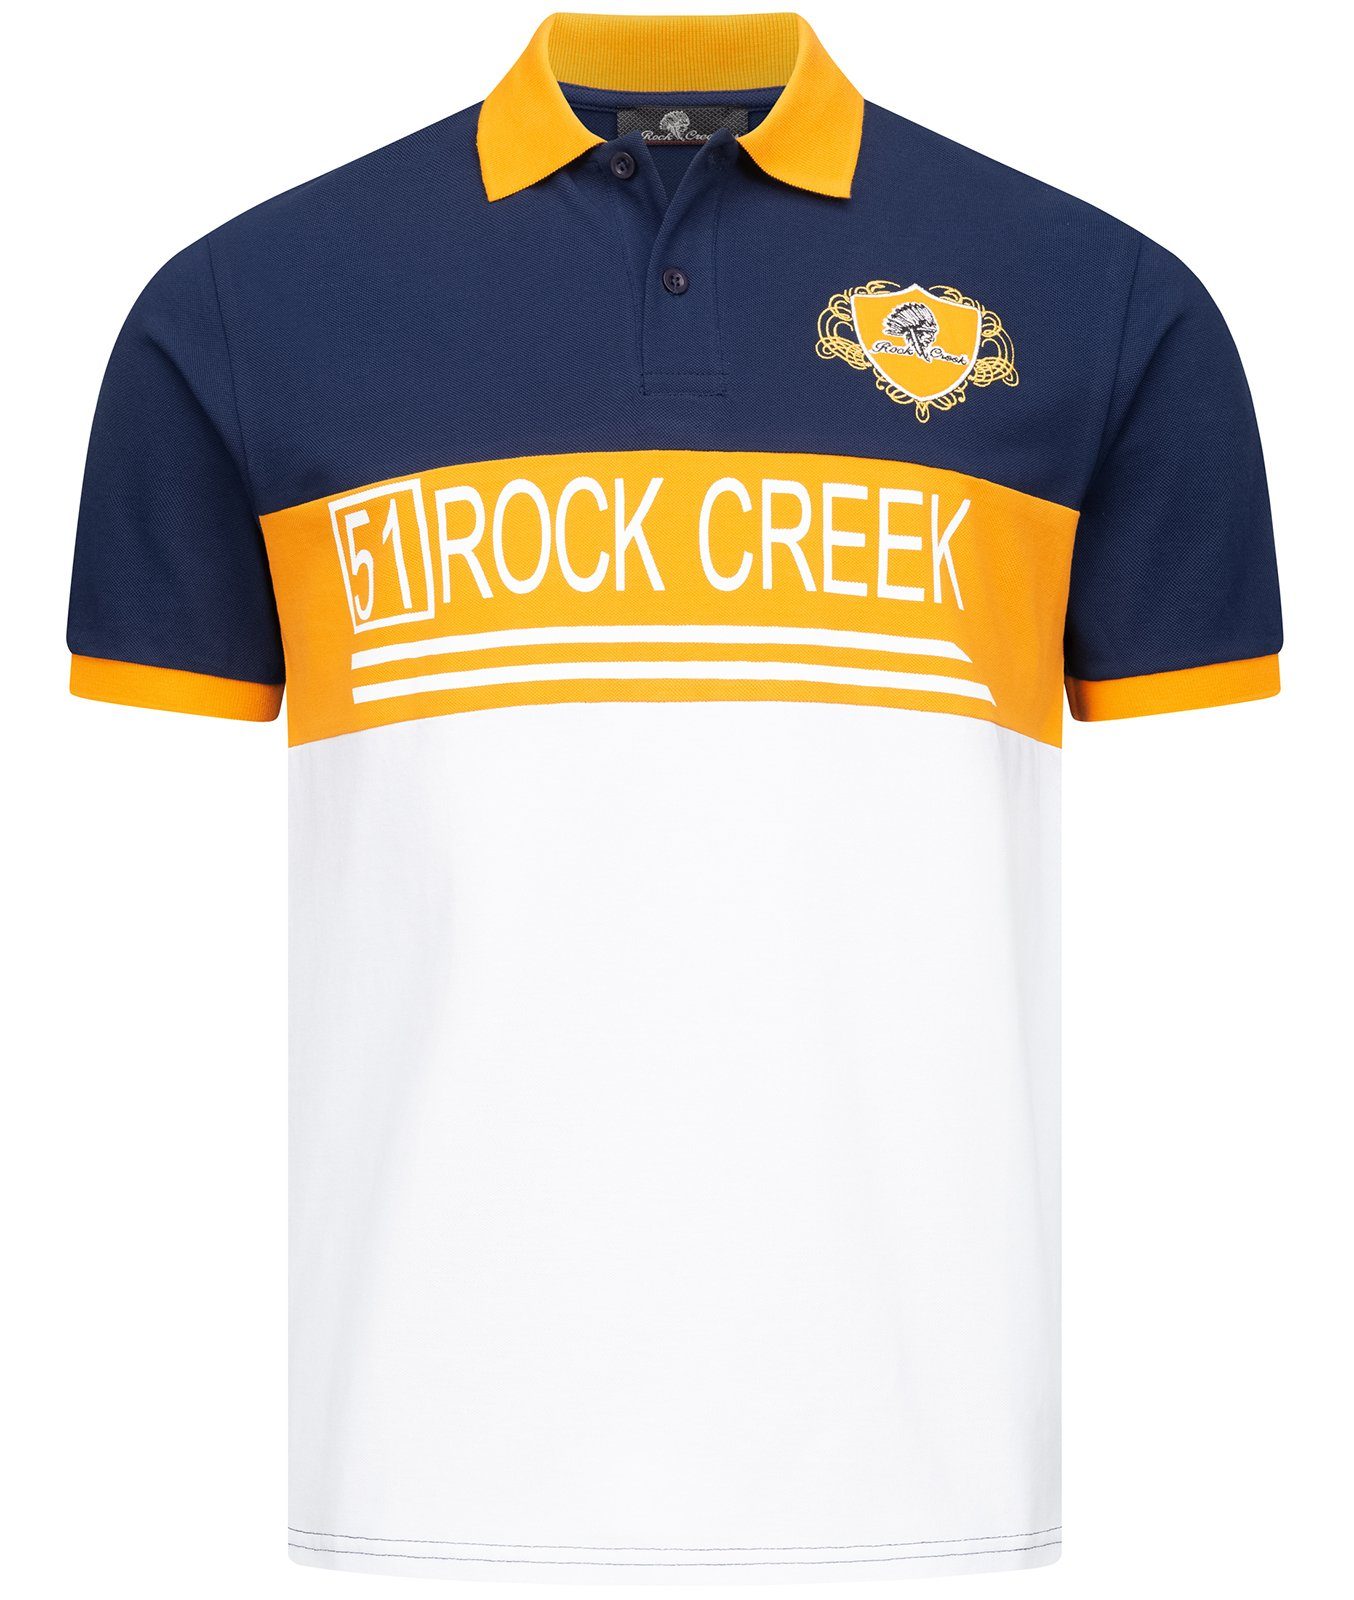 Rock Creek Poloshirt Herren T-Shirt mit Polokragen H-306 Navy